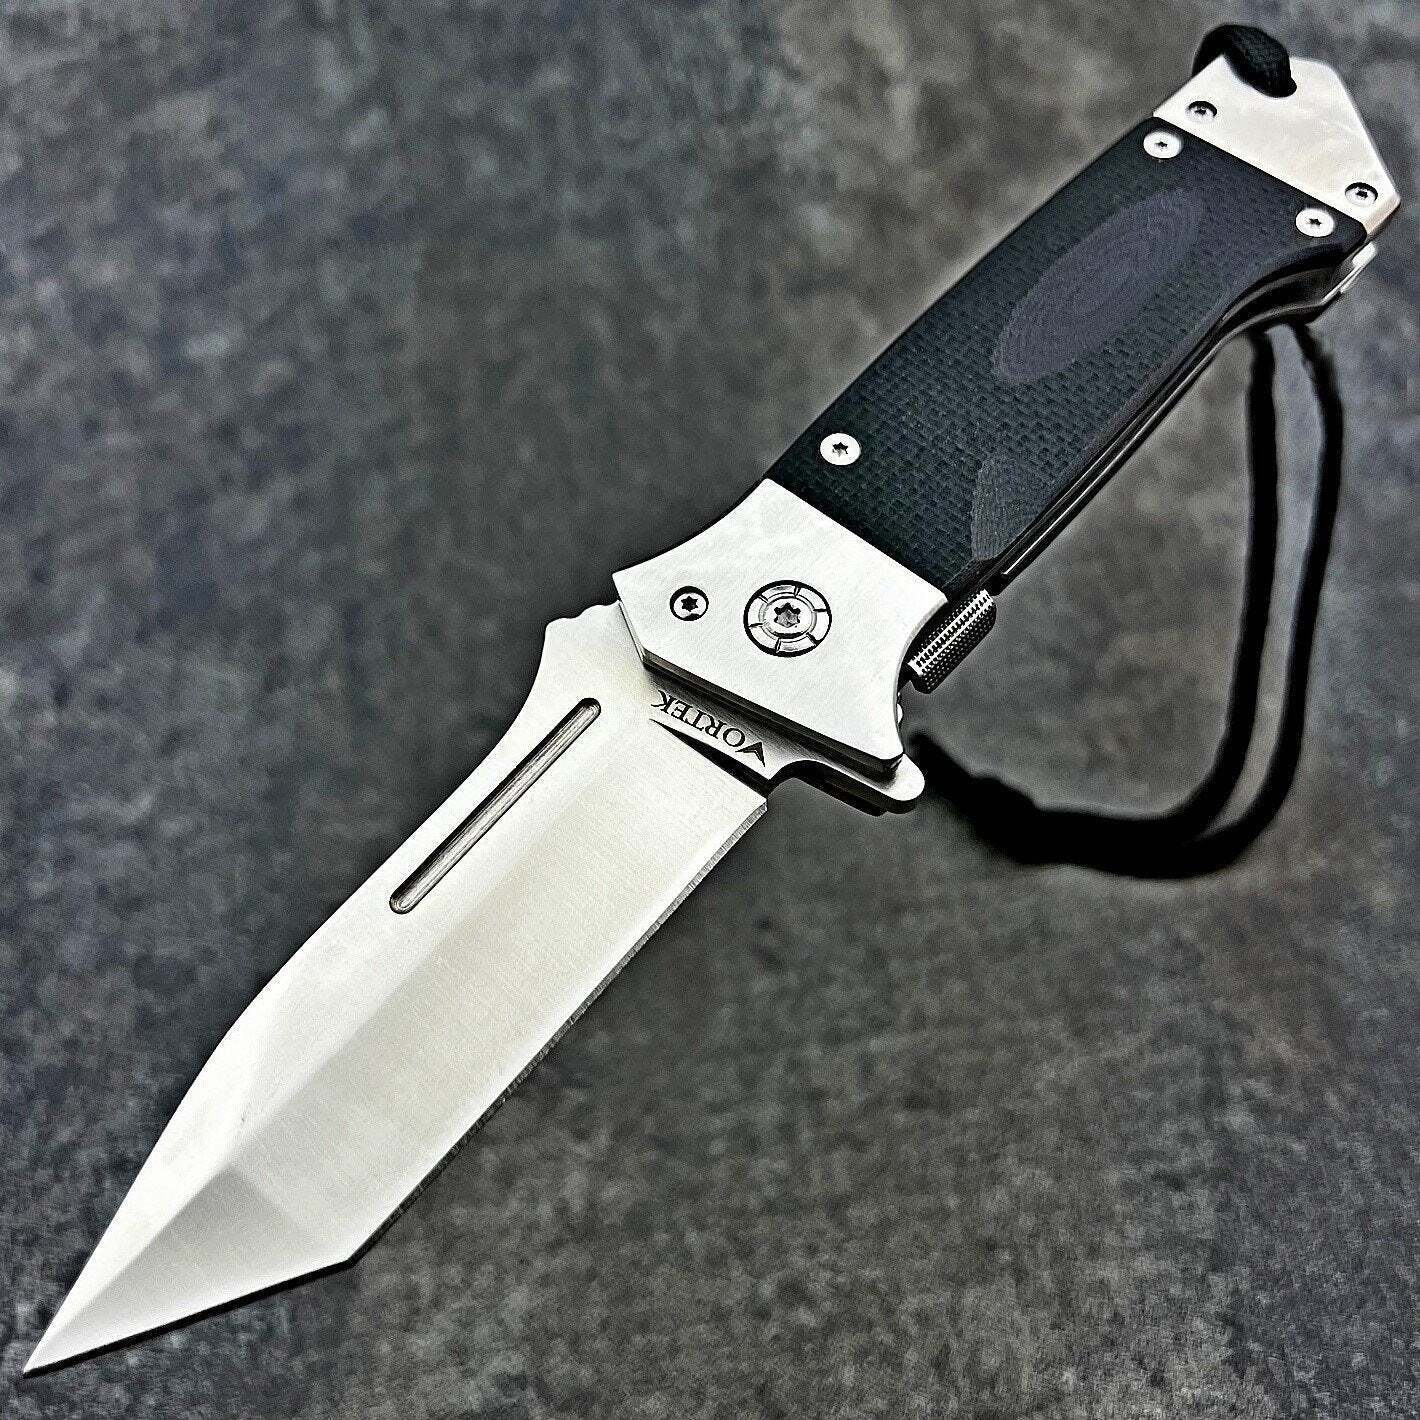 VORTEK WARTHOG Large Tactical Tanto Flipper Blade Black G10 Folding Pocket Knife